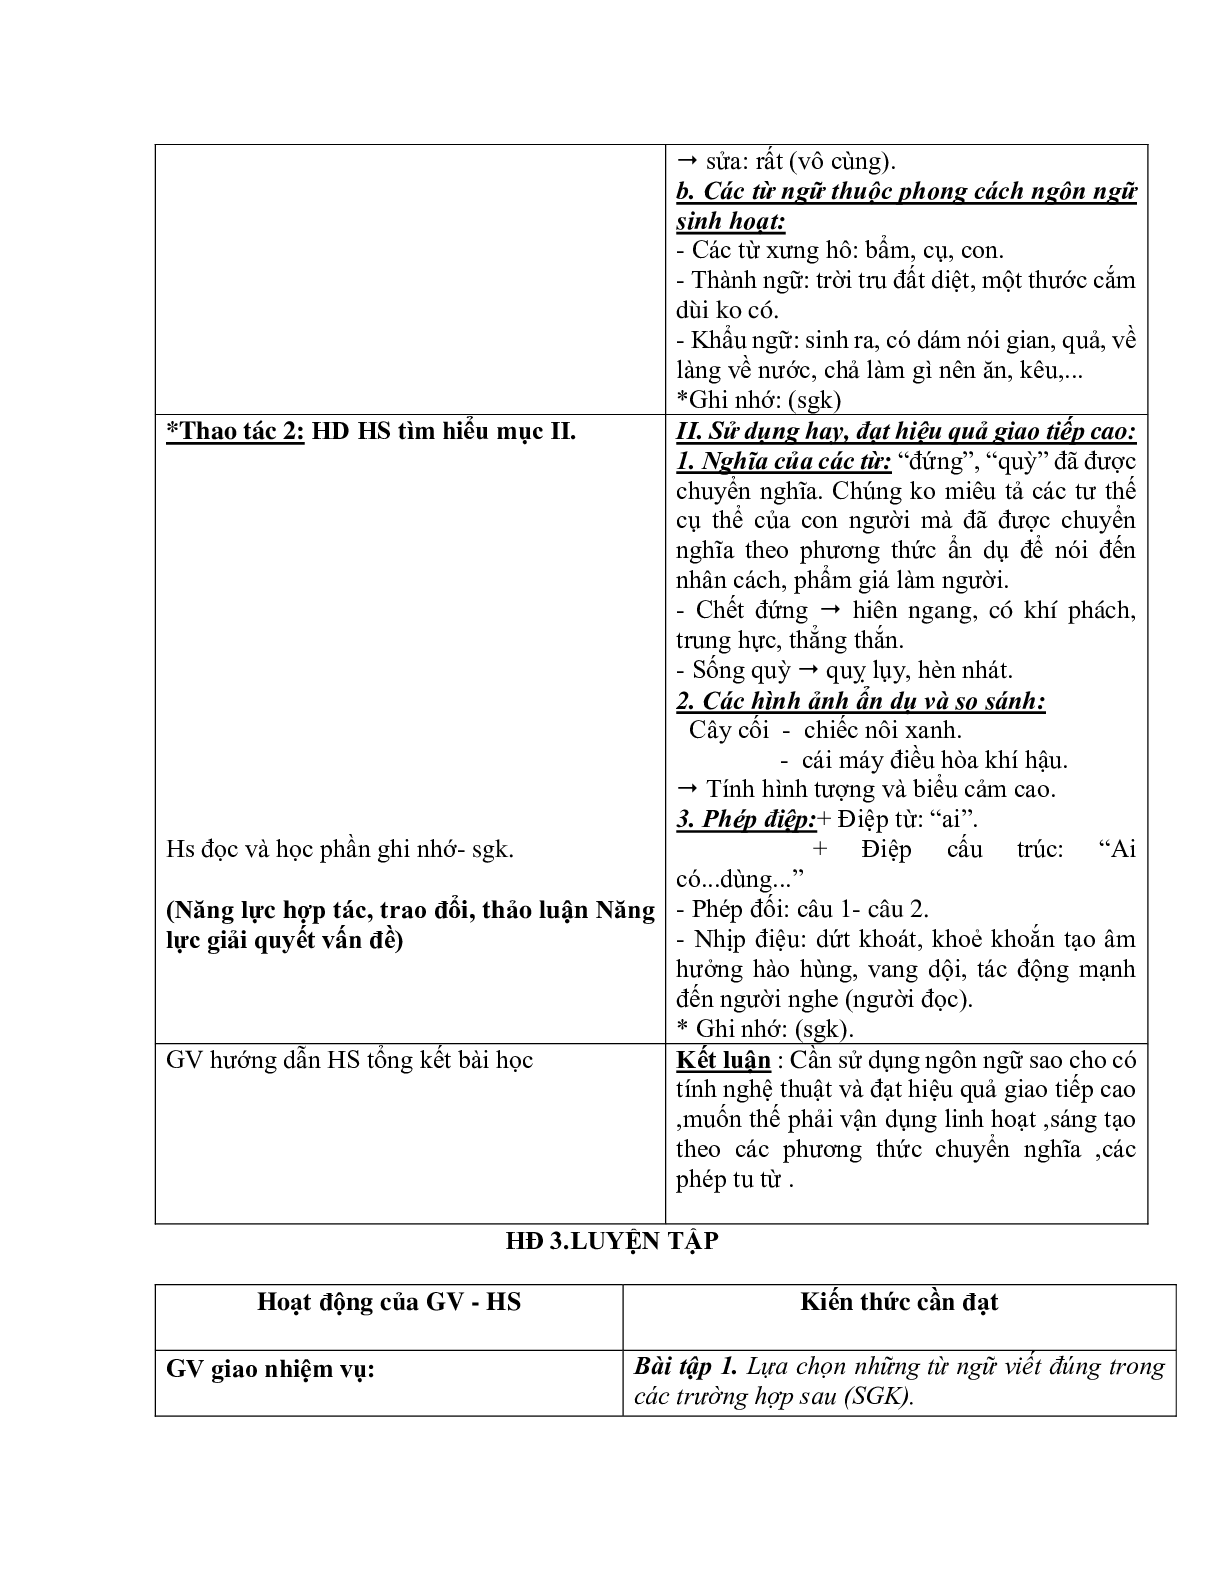 Giáo án ngữ văn lớp 10 Tiết 70: Những yêu cầu về sử dụng tiếng việt (trang 4)